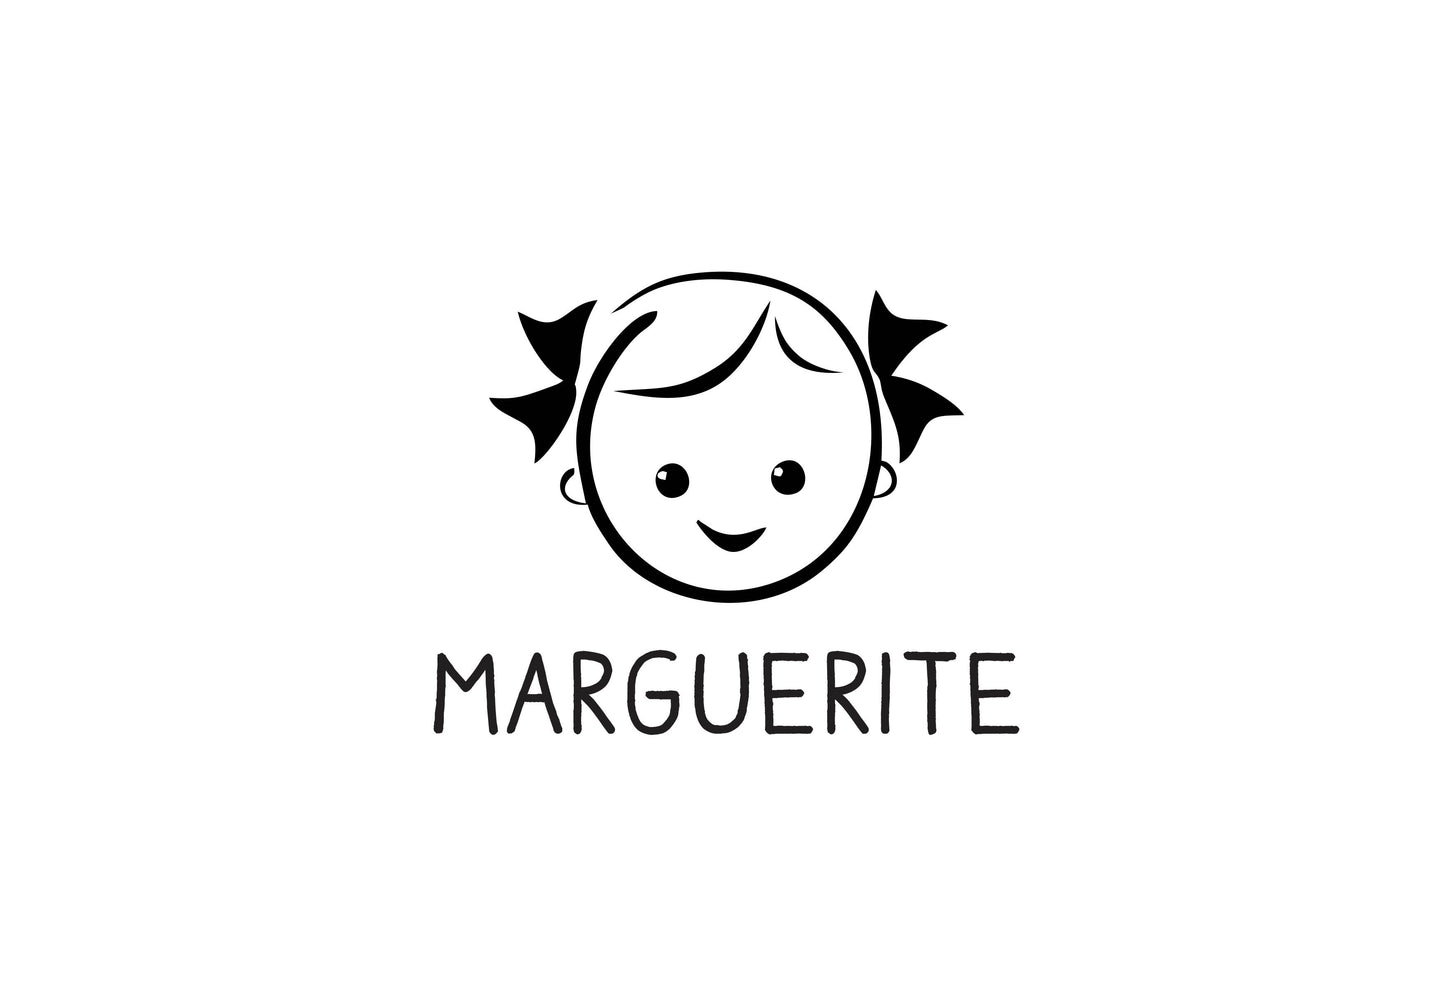 Tampon biscuit fillette Marguerite sur mesure pour personnaliser vos sablés ou cookies, tampon biscuit personnalisé, biscuit avec monture